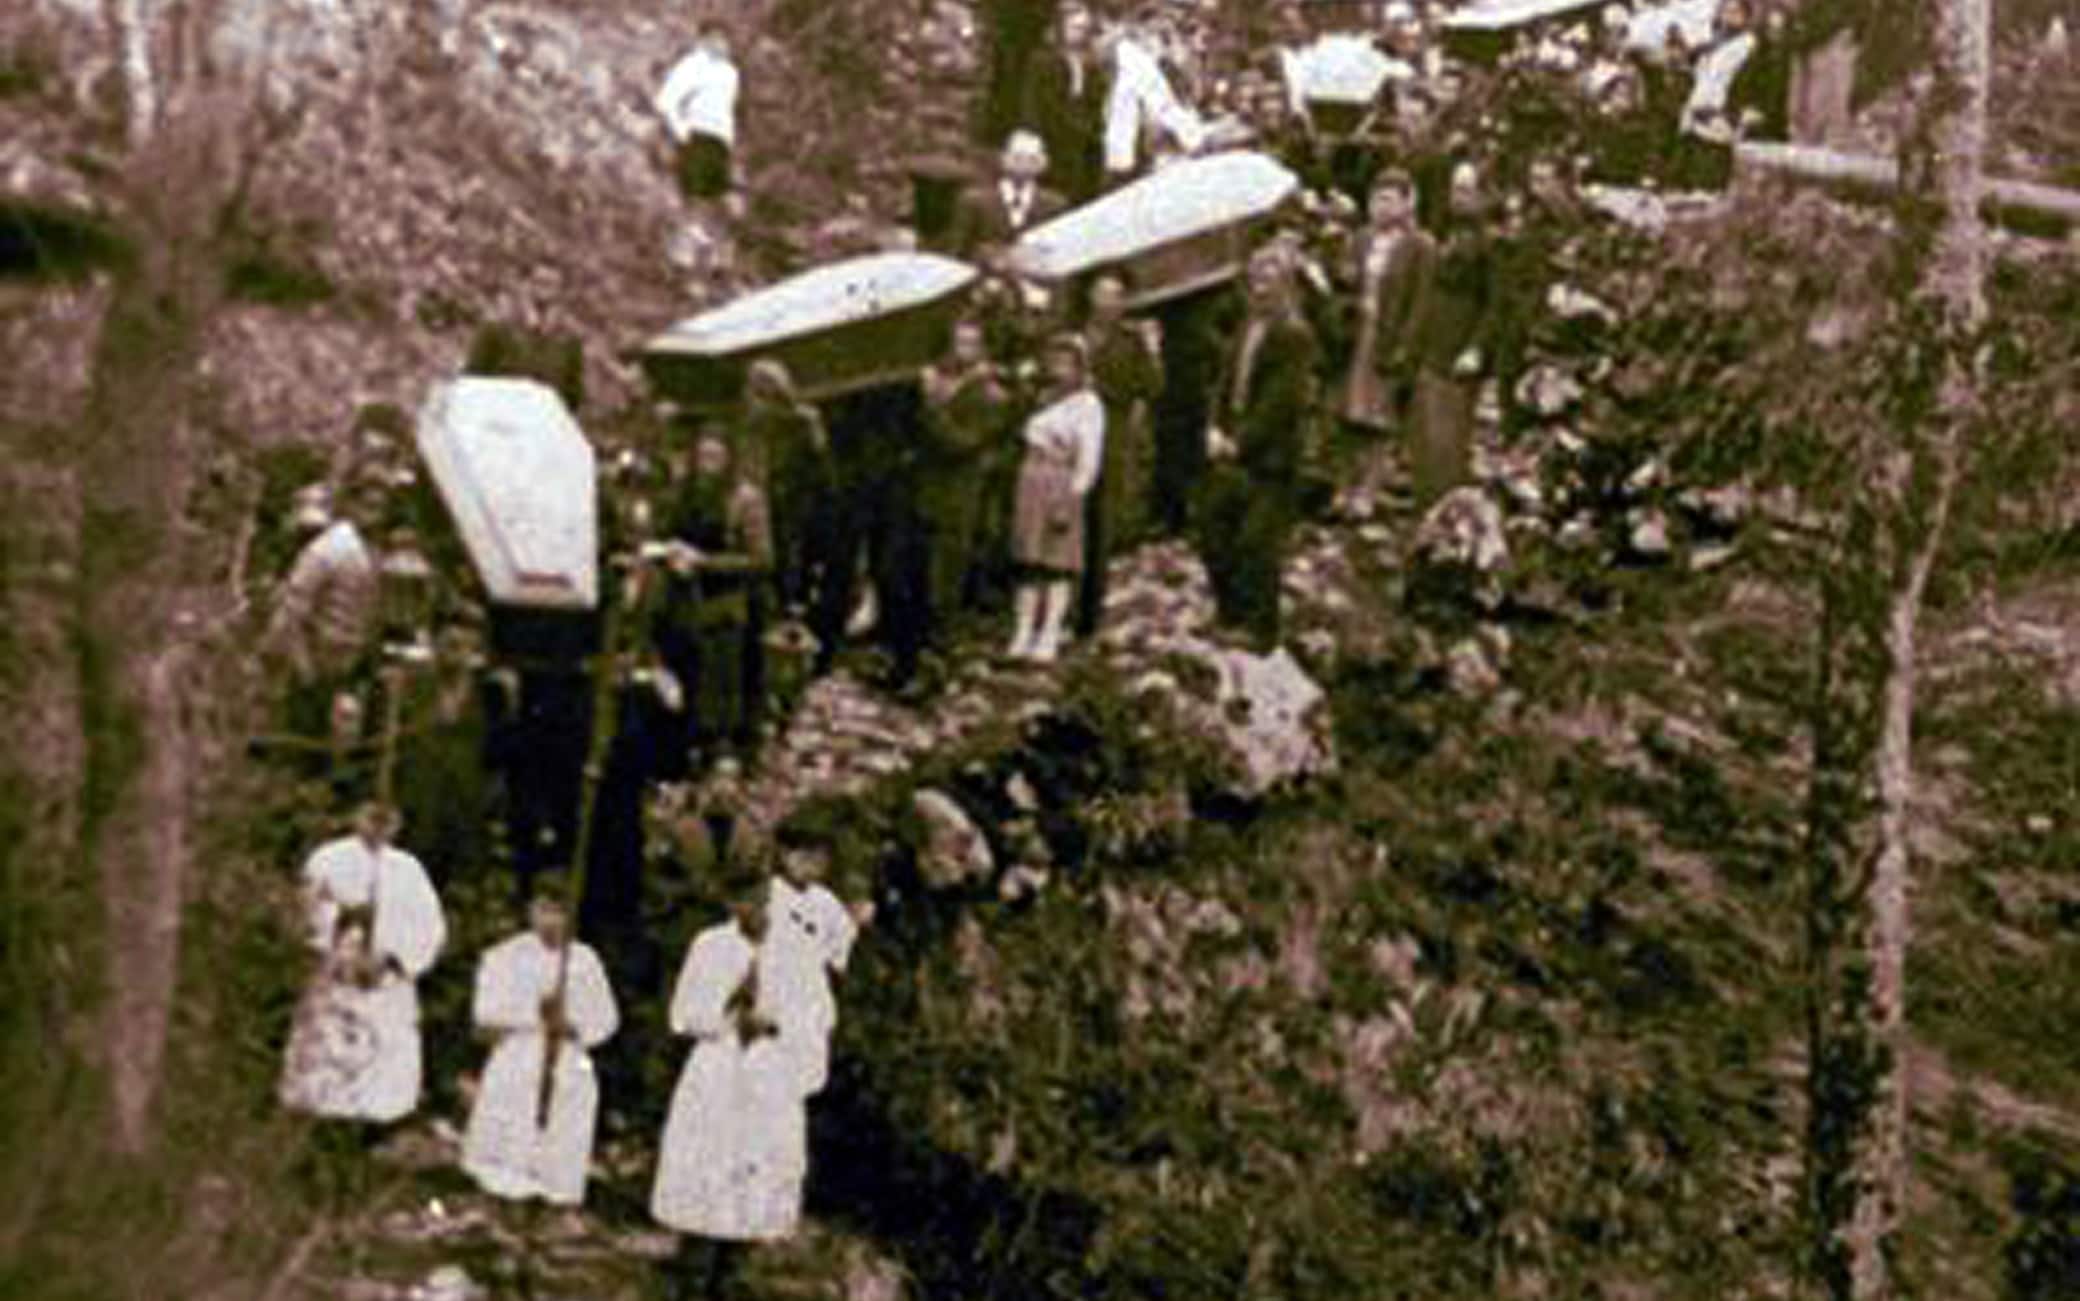 La traslazione delle salme delle vittime della strage nazista di Sant'Anna di Stazzema (agosto 1944)  verso il Monumento Ossario, avvenuta nella primavera del 1948. Nell'eccidio vennero massacrati 560 innocenti, in gran parte bambini, donne e anziani. 
ANSA/UFFICIO STAMPA MUSEO DI STAZZEMA   +++HANDOUT NO SALES - EDITORIAL USE ONLY+++